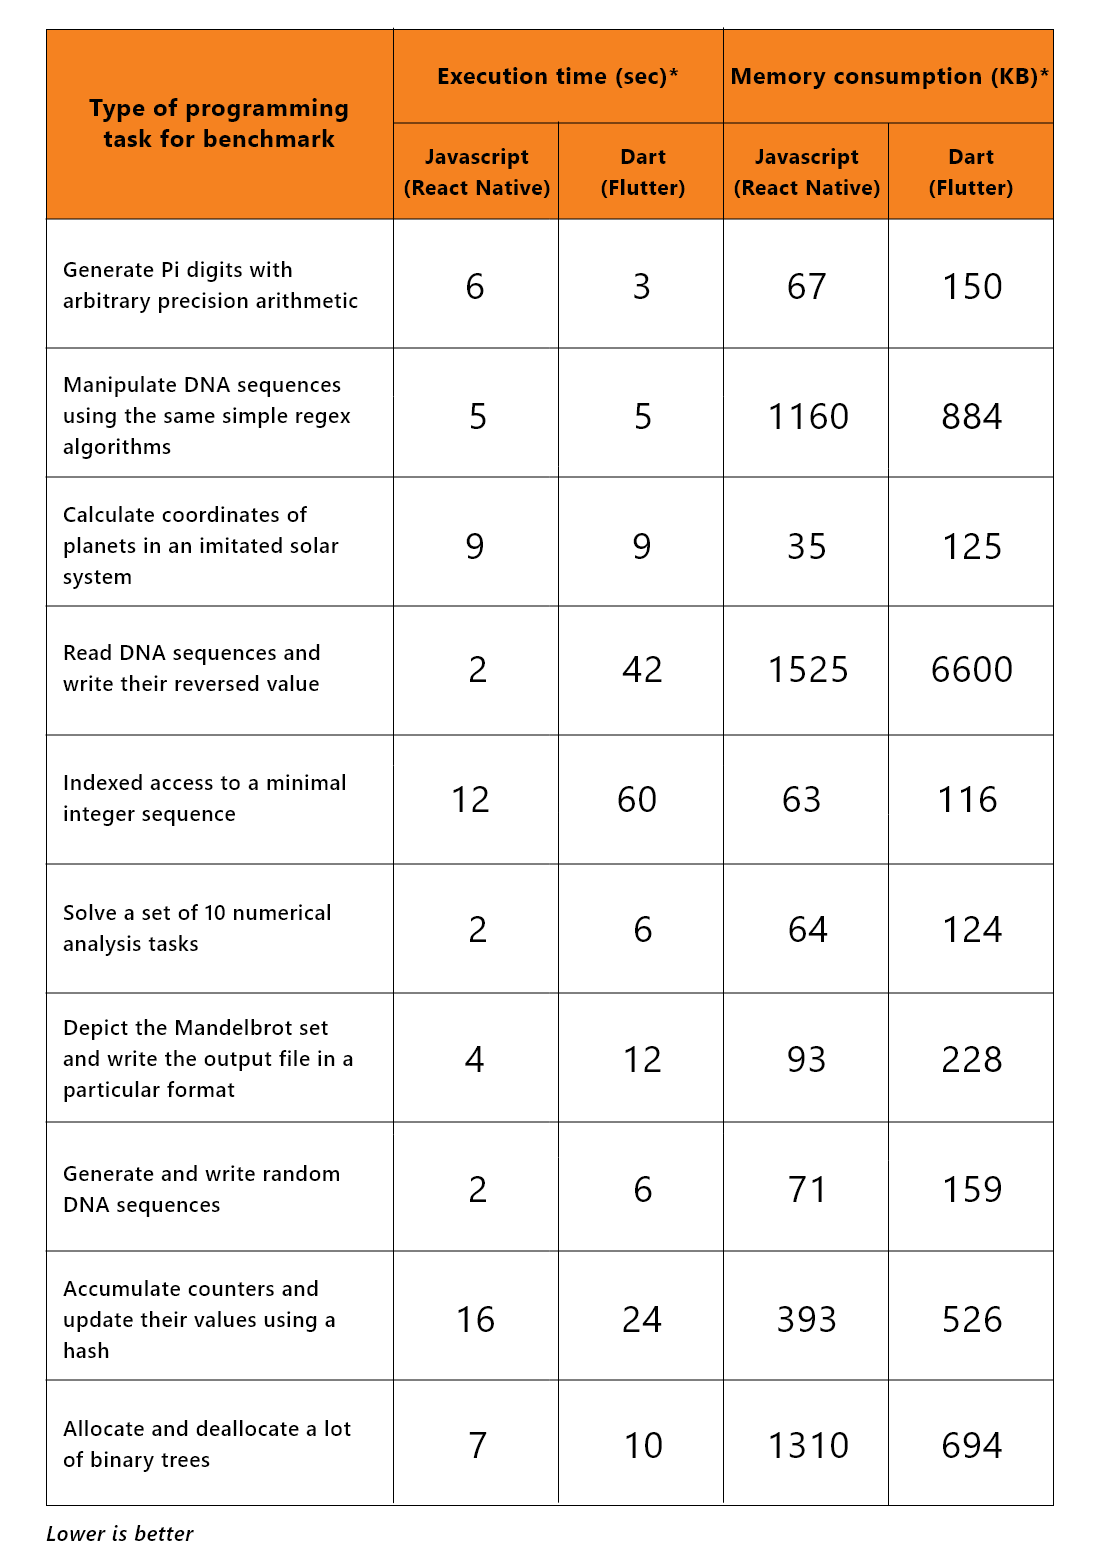 Flutter vs React Native Performance Comparison